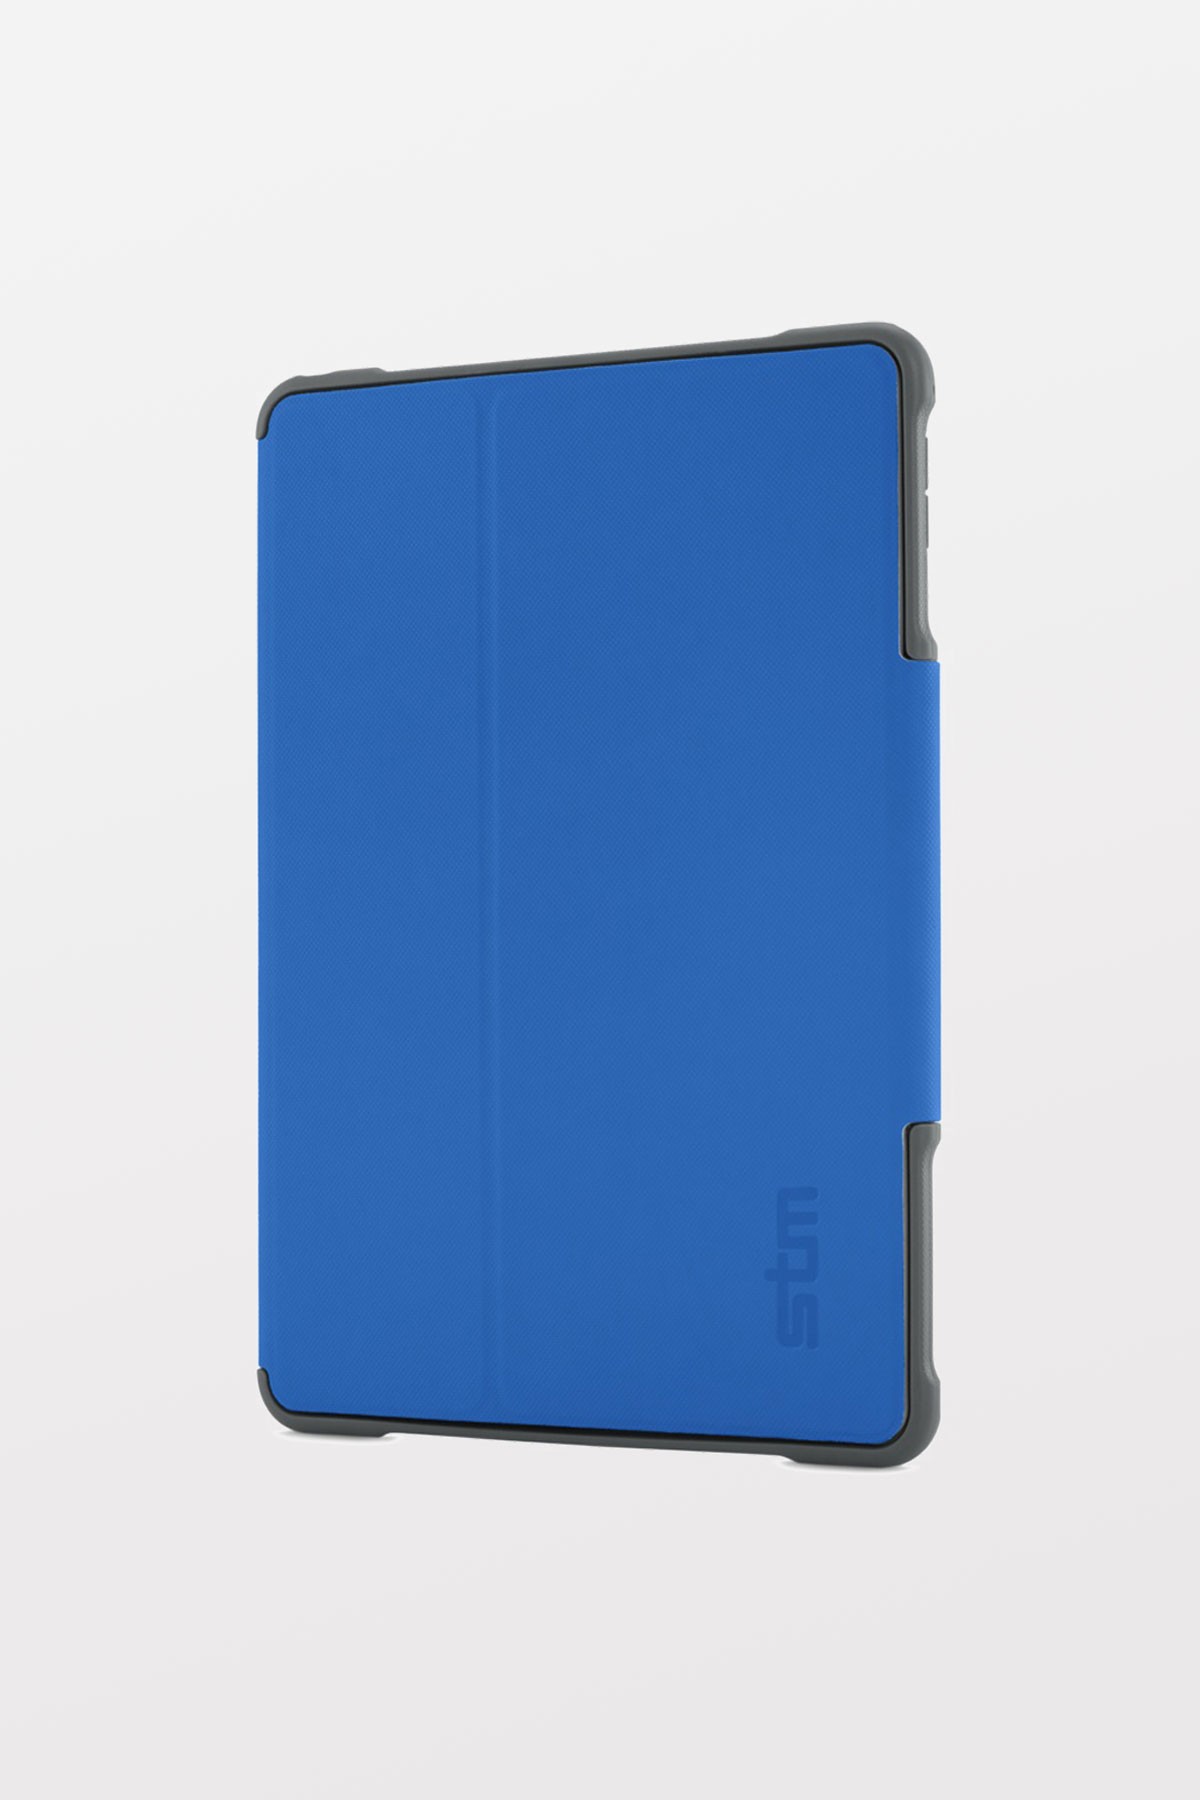 STM Dux for iPad Mini 4/Mini 5 - Blue